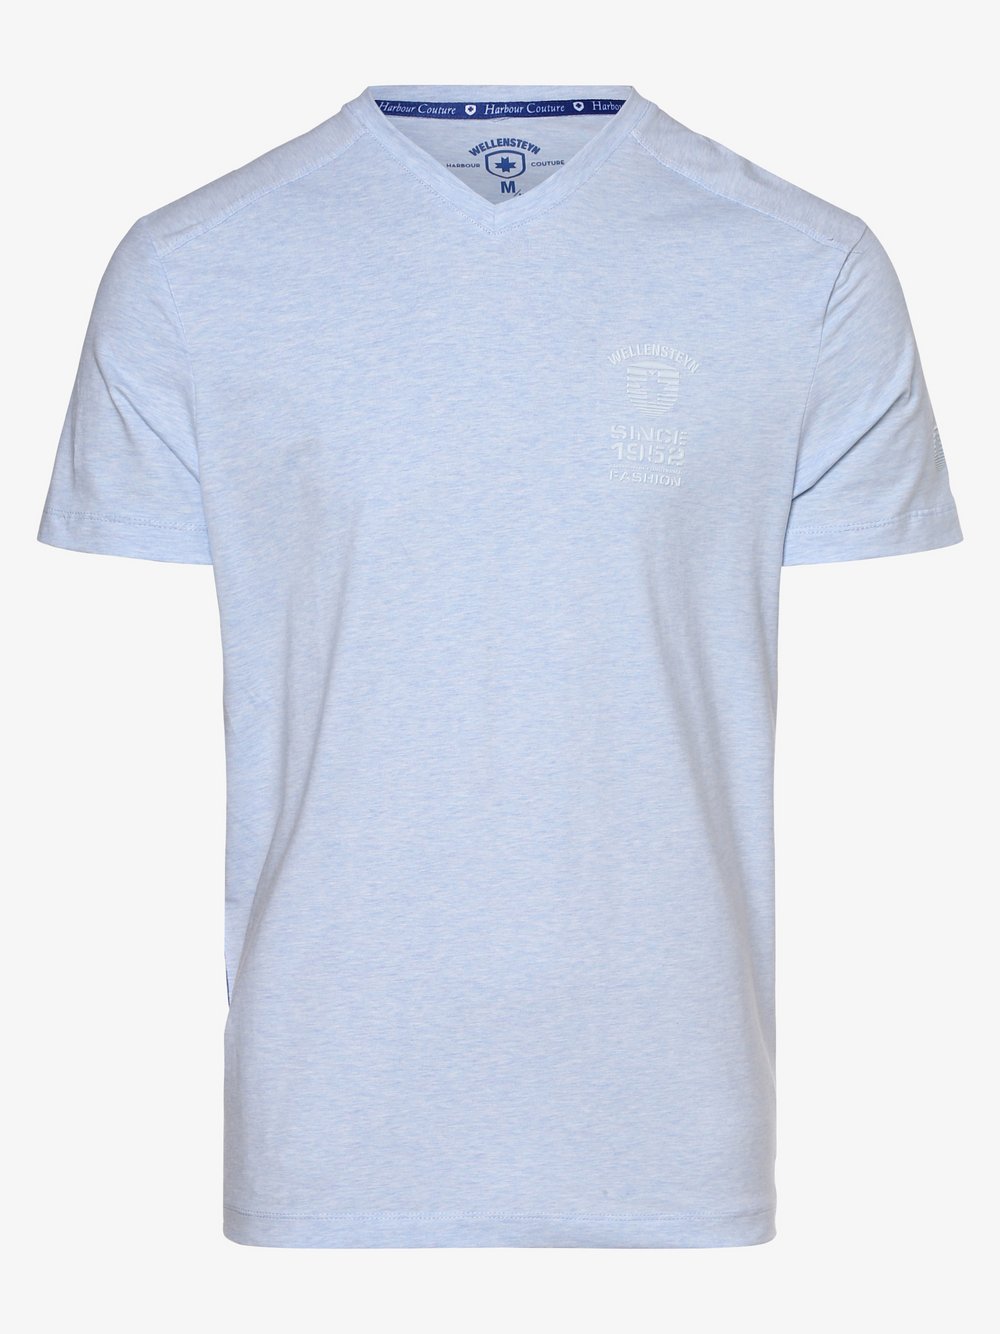 Wellensteyn - T-shirt męski, niebieski